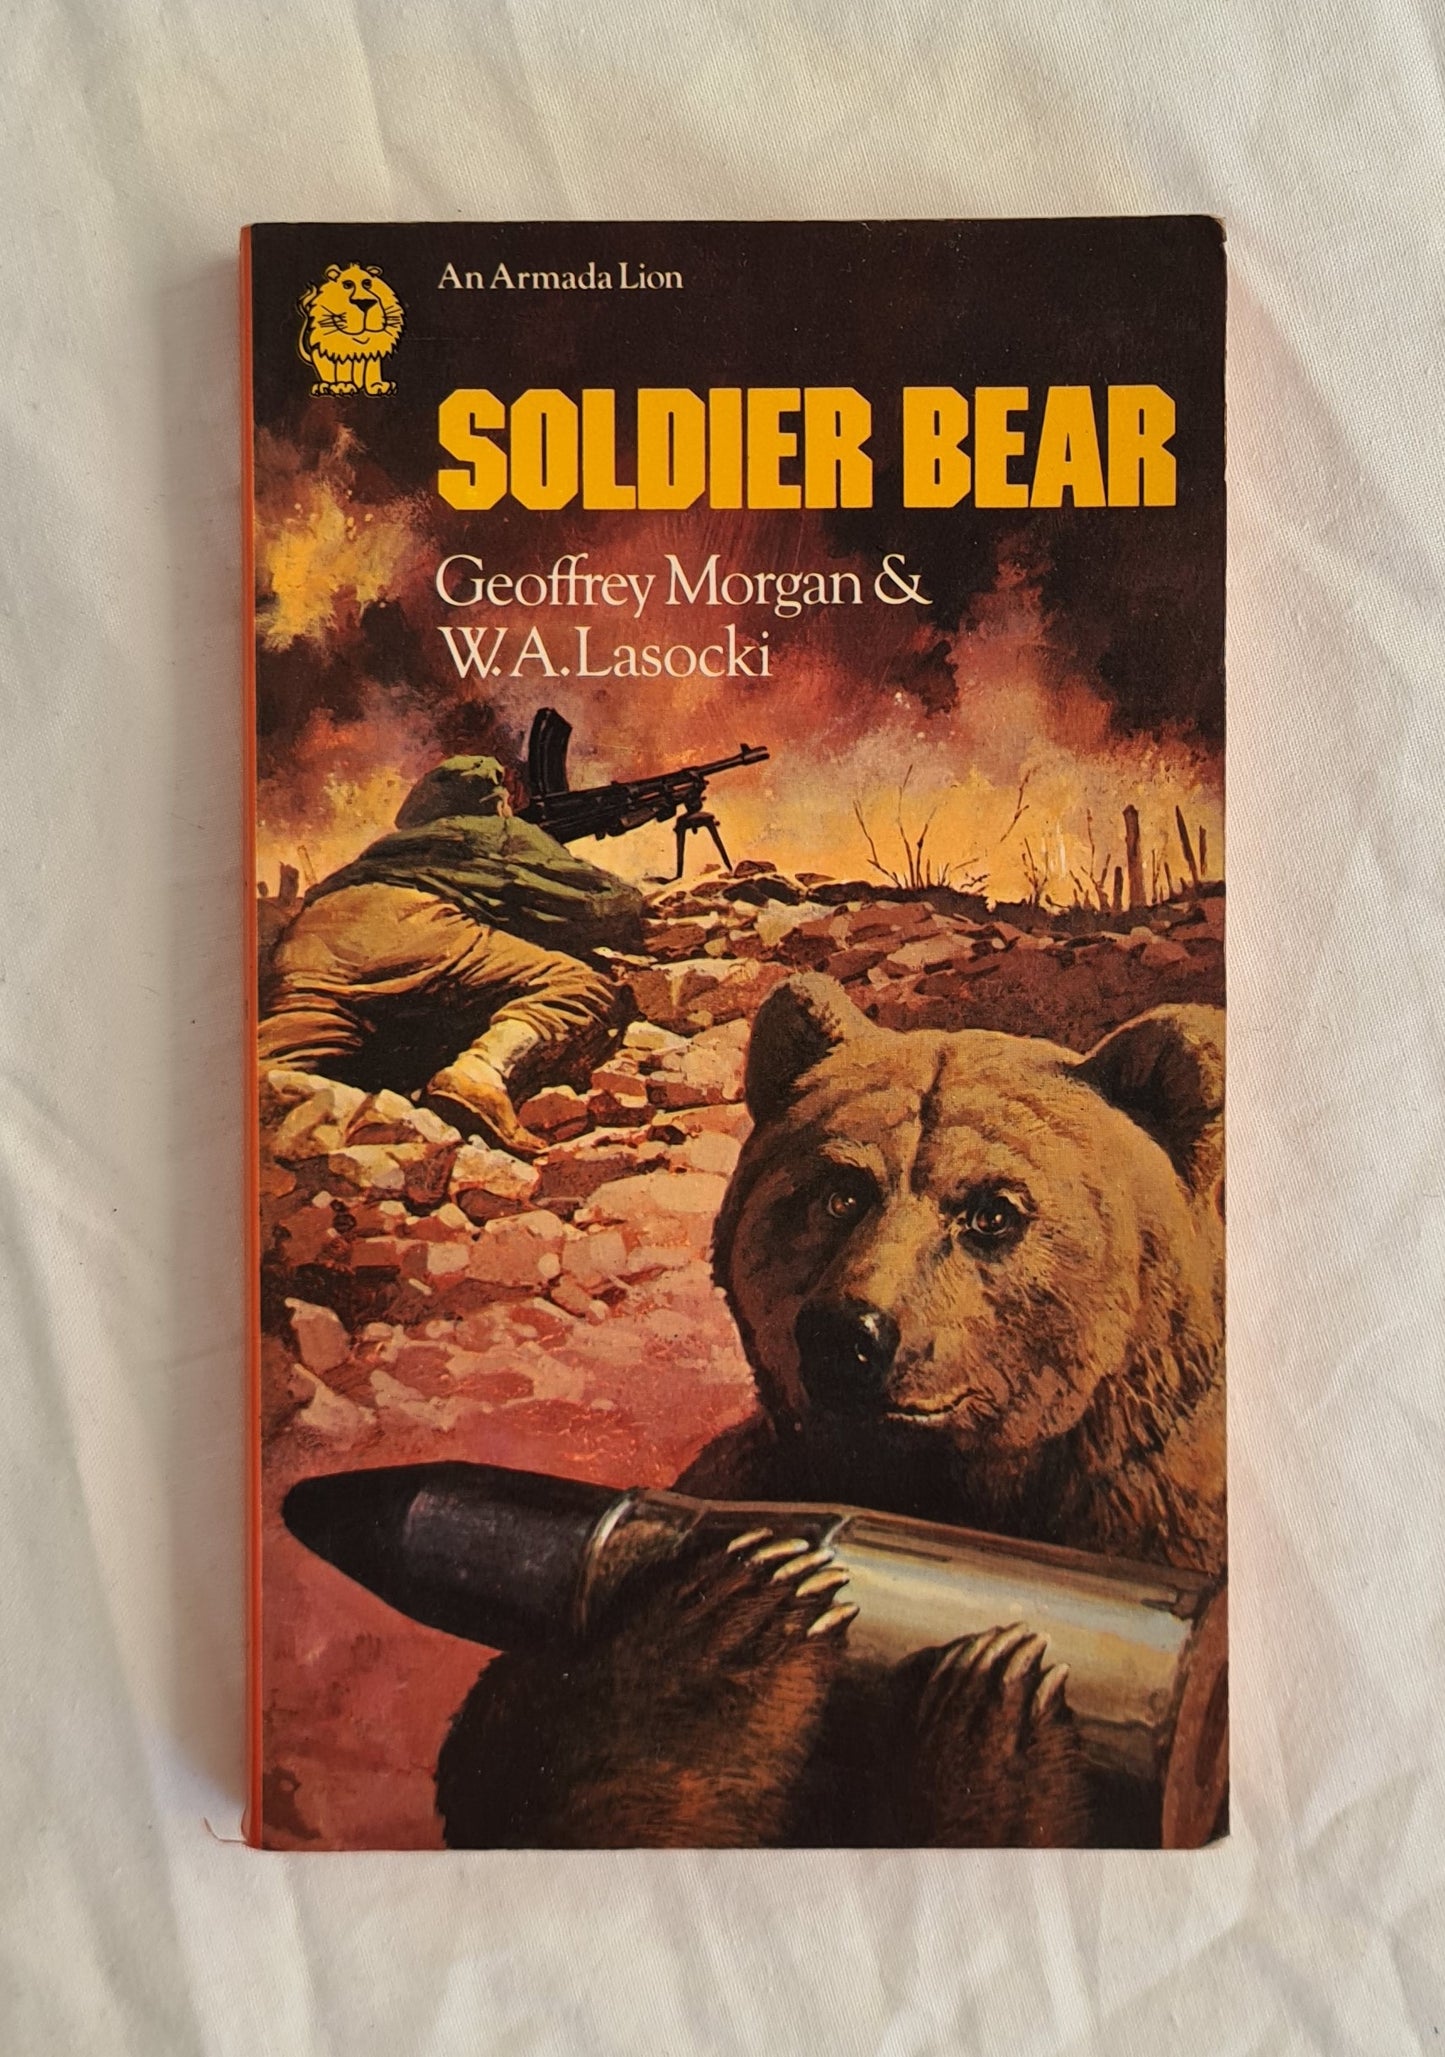 Soldier Bear by Geoffrey Morgan and W. A. Lasocki